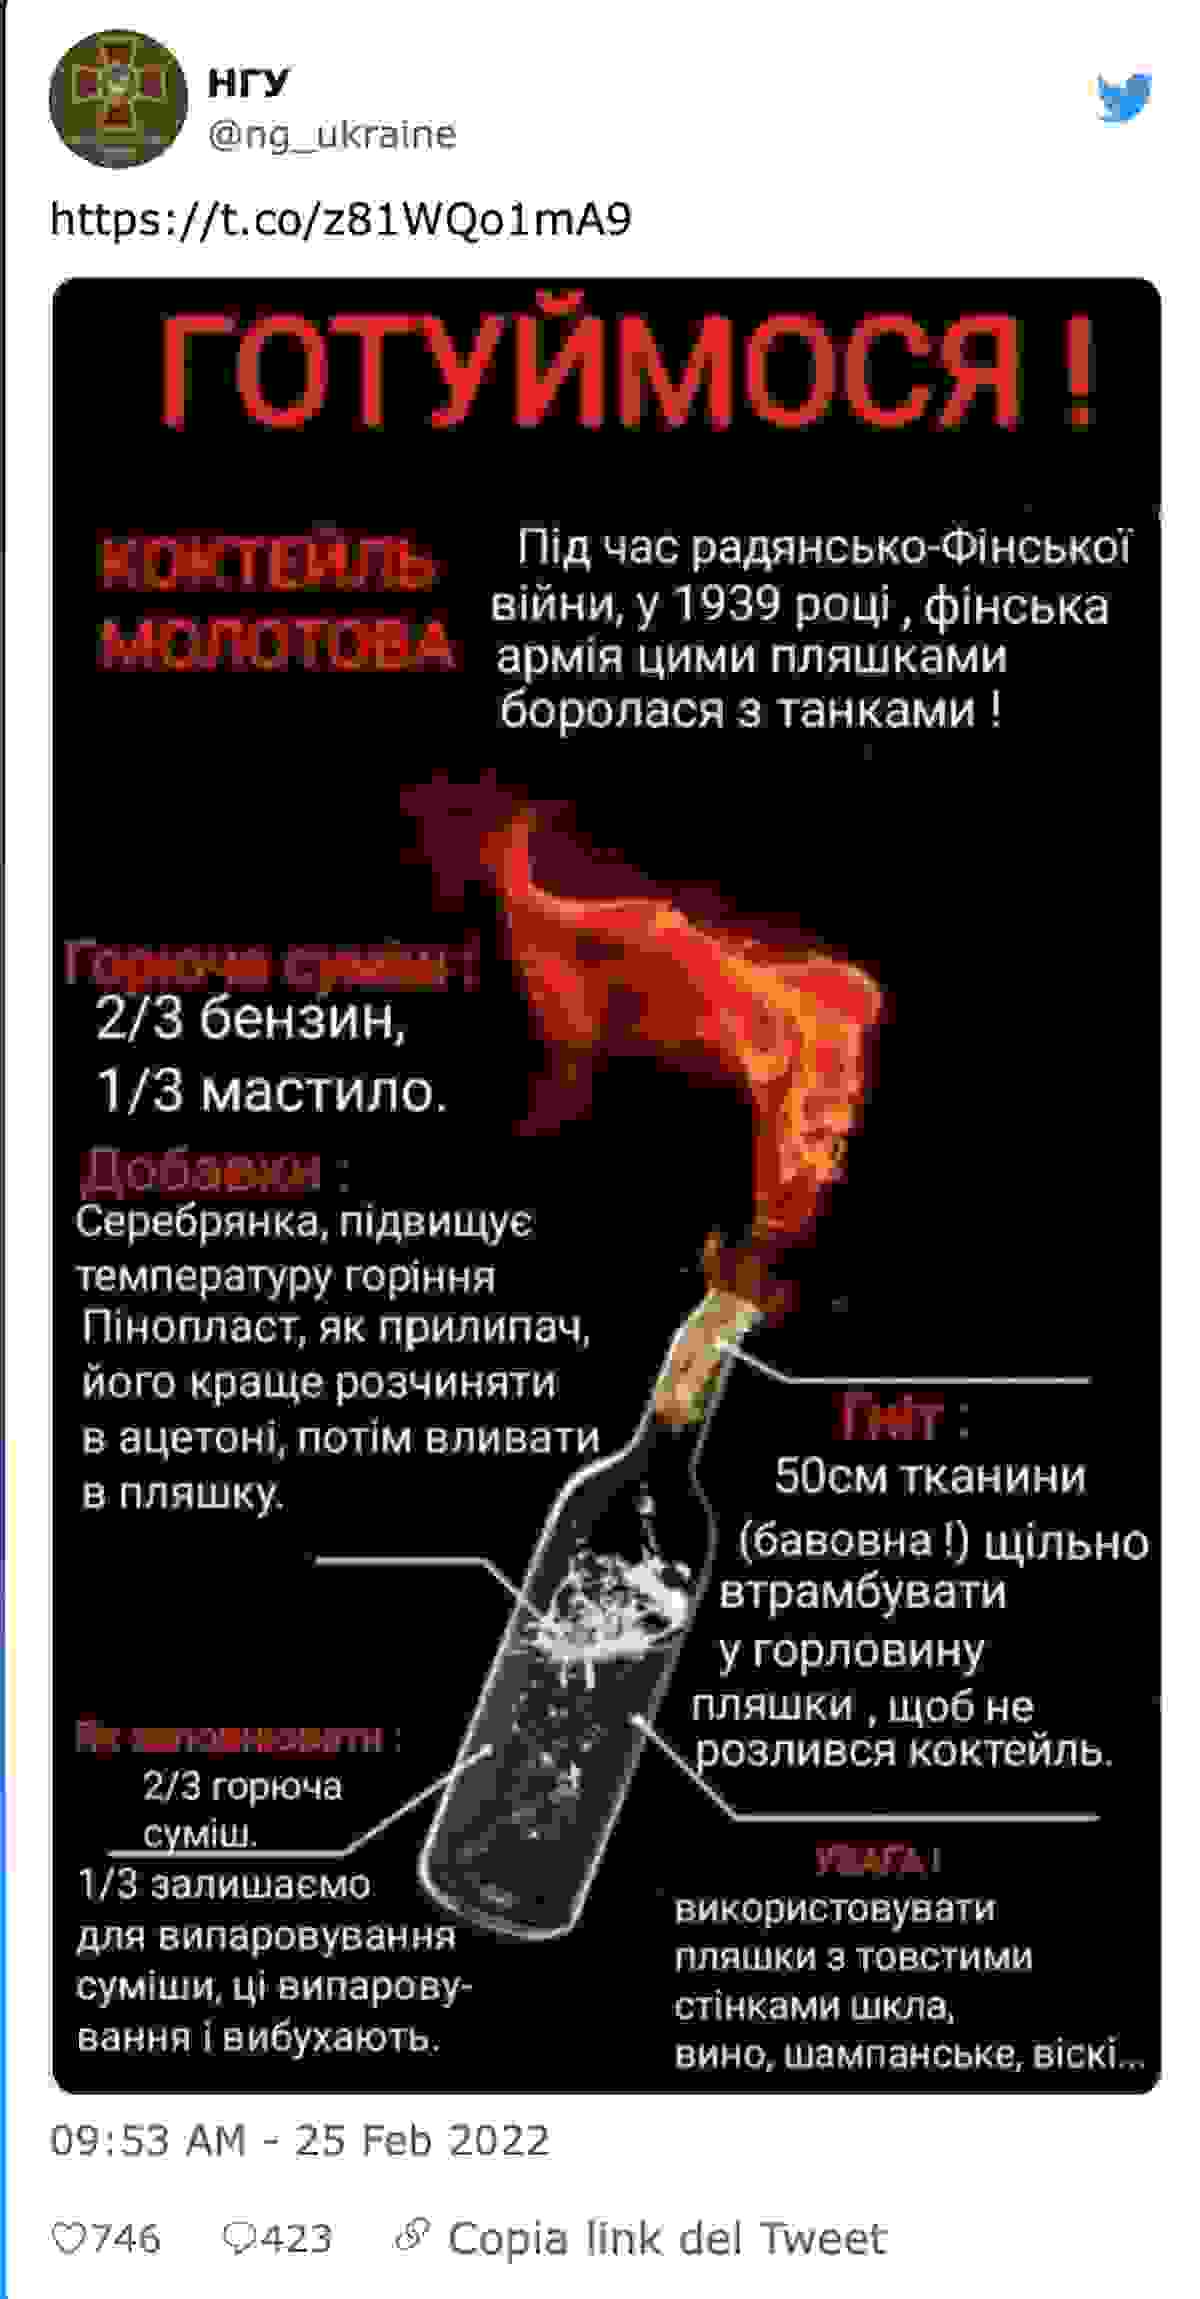 Guerra Ucraina, il governo ai cittadini: "Costruite molotov e resistete". Diffusa anche la guida per fabbricarle